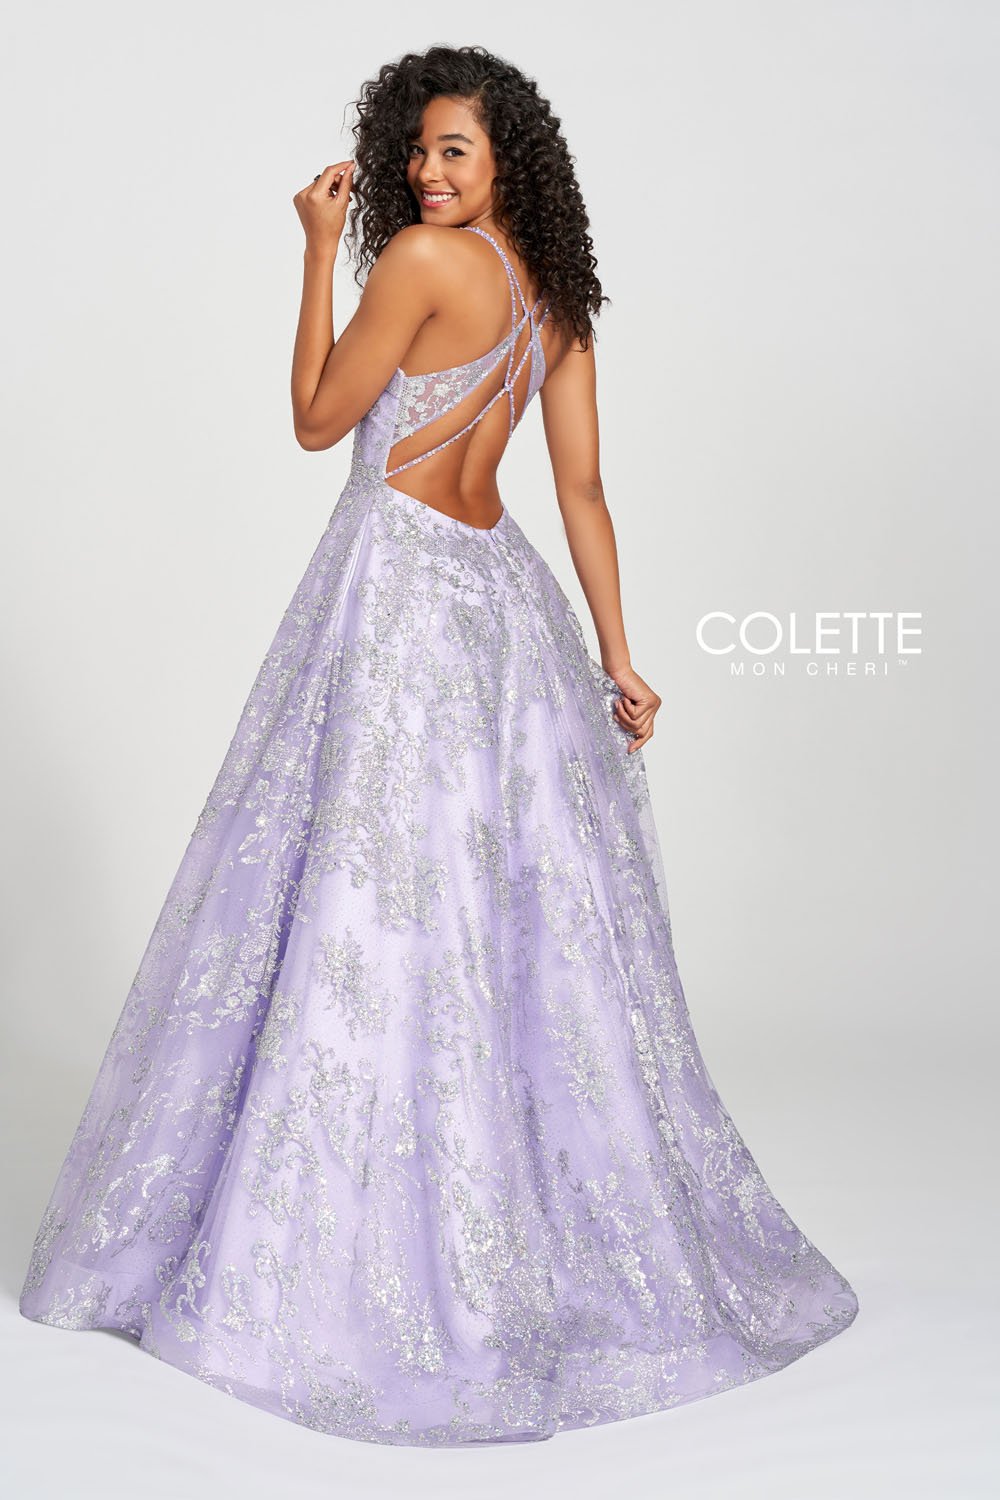 Colette CL12201 Violet Silver prom dresses.  Violet Silver prom dresses image by Colette.